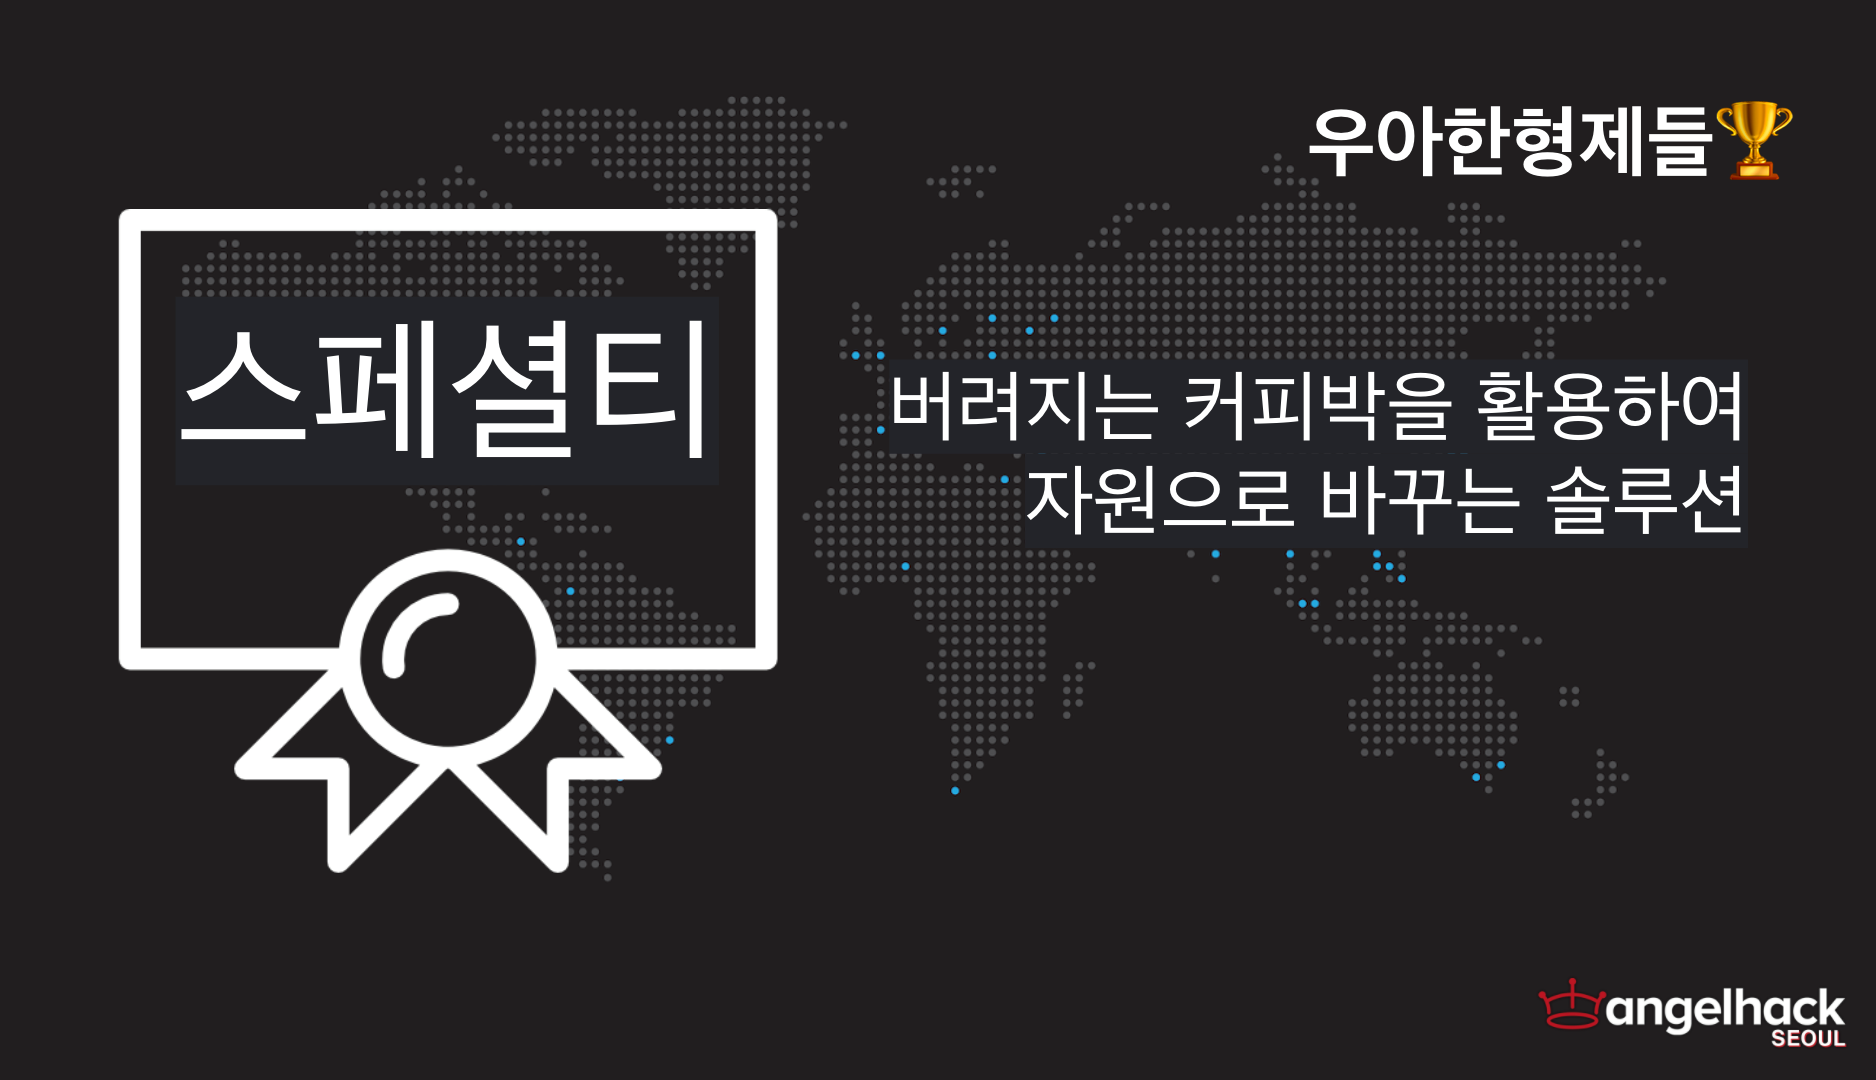 angelhack-seoul-2020-online